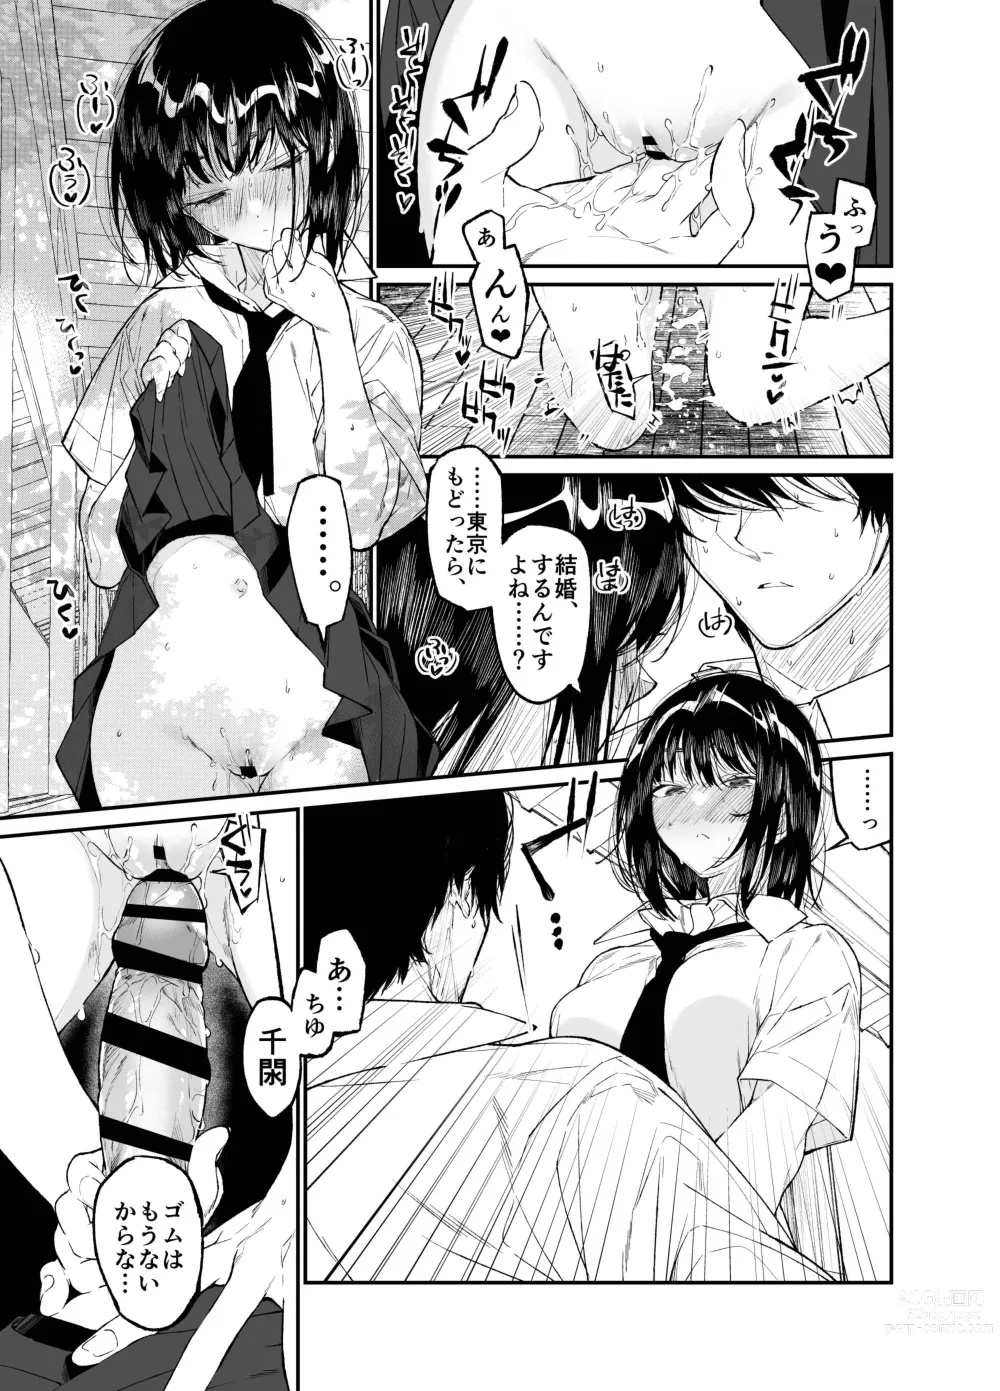 Page 49 of doujinshi Natsu, Shoujo wa Tonde, Hi ni Iru.